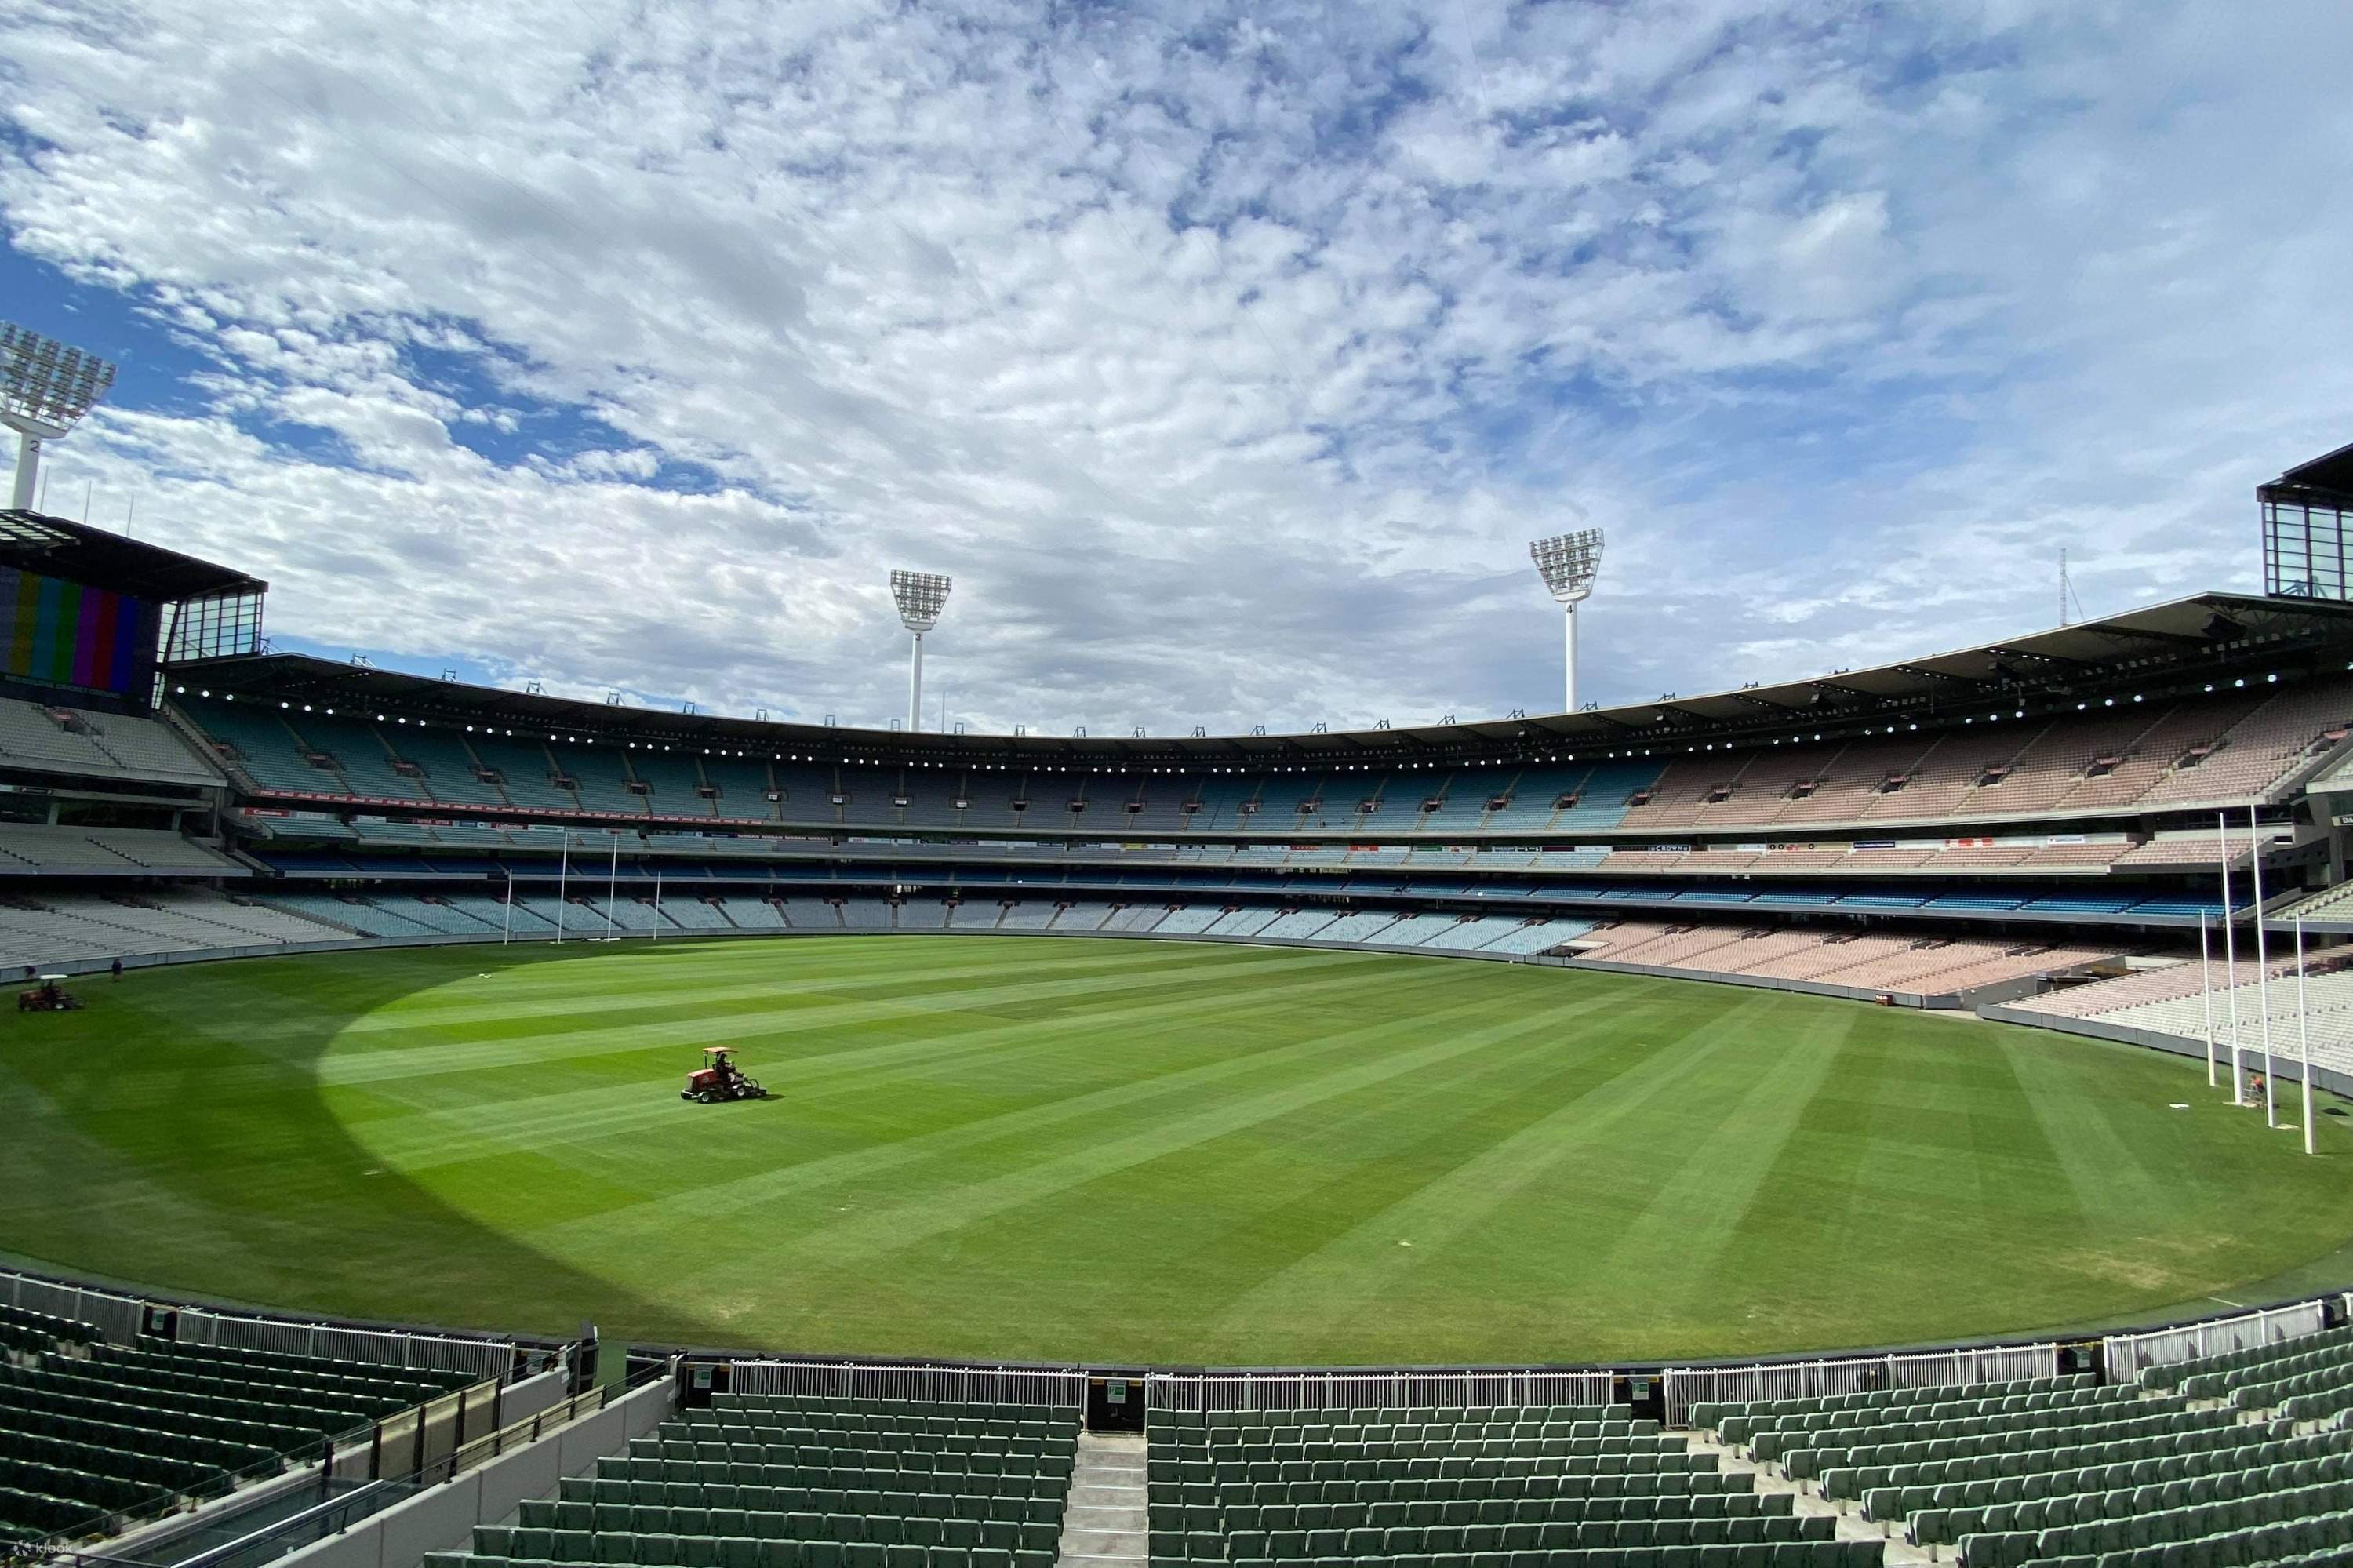 Мельбурн крикет Граунд стадион. Мельбурн крикет Граунд. Мельбурн.